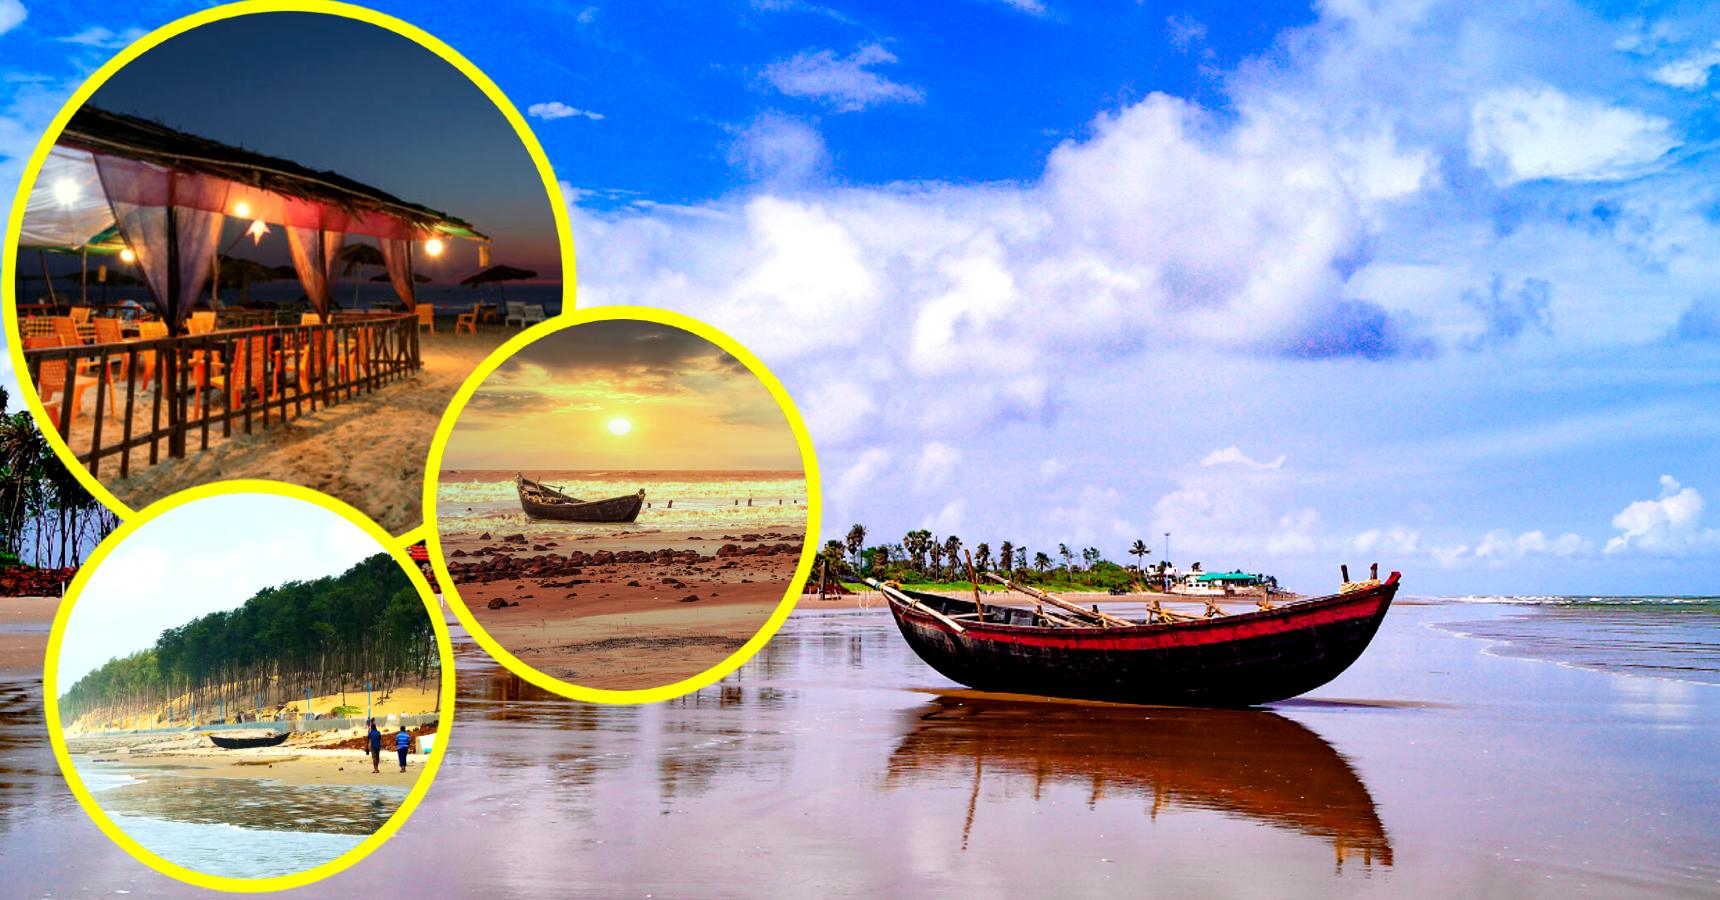 Weekednd Trip Destination Forget Digha Puri visit Lalgunj beach near Kolkata this summer